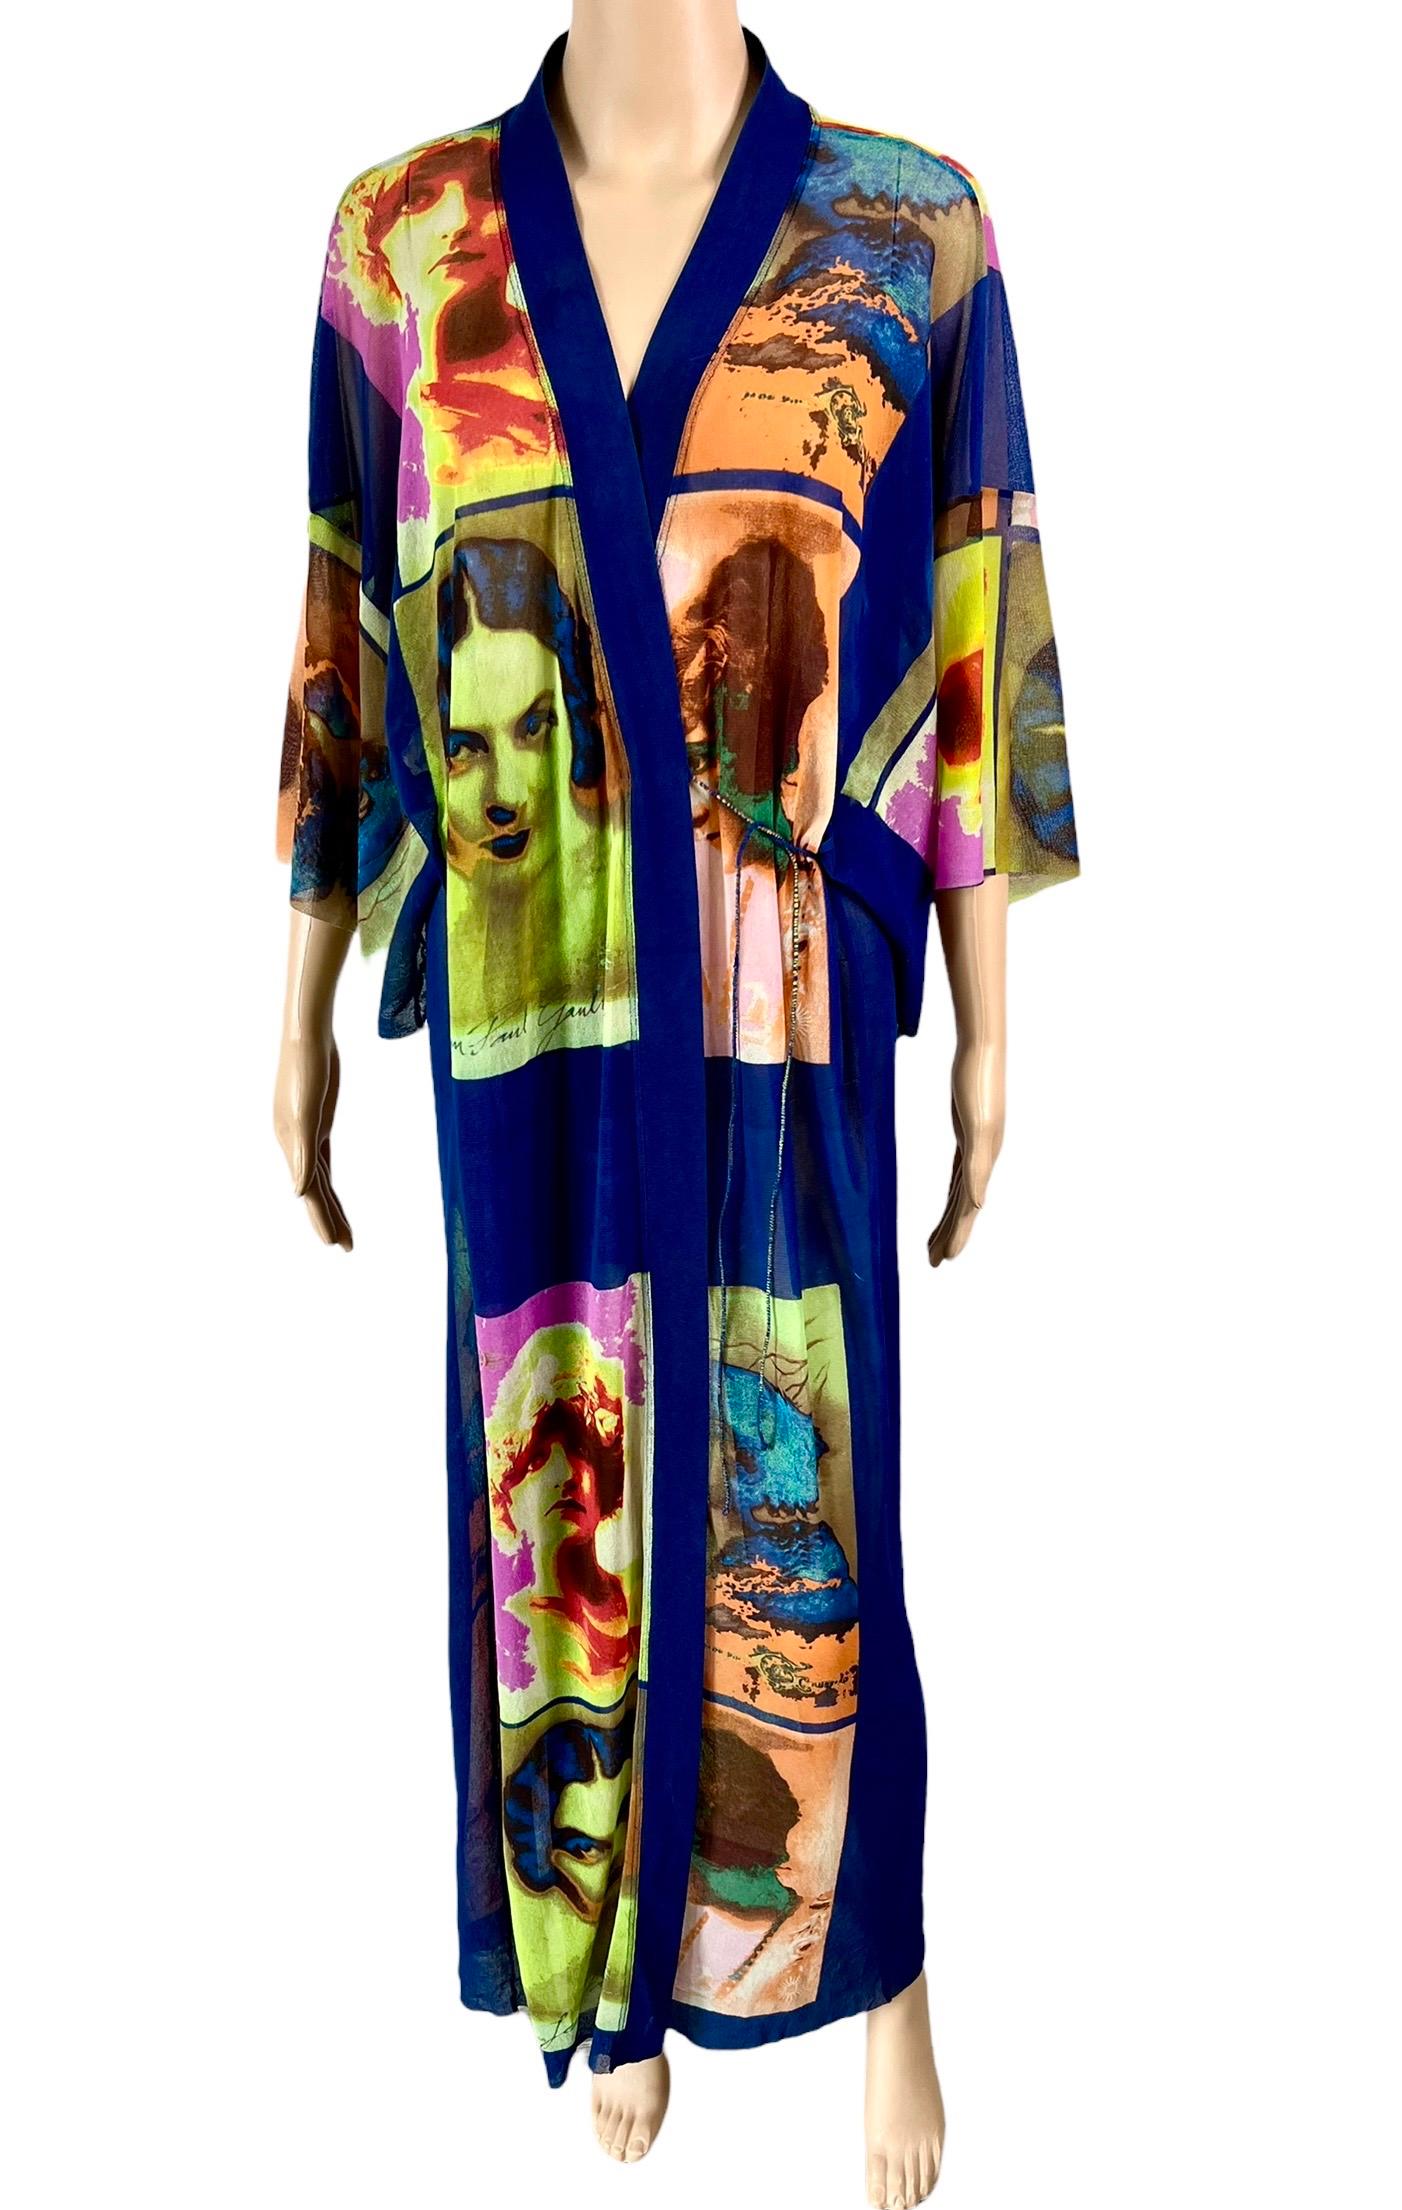 Violet Jean Paul Gaultier Soleil S/S 2002 Vintage Portraits Robe longue en maille Kimono en vente